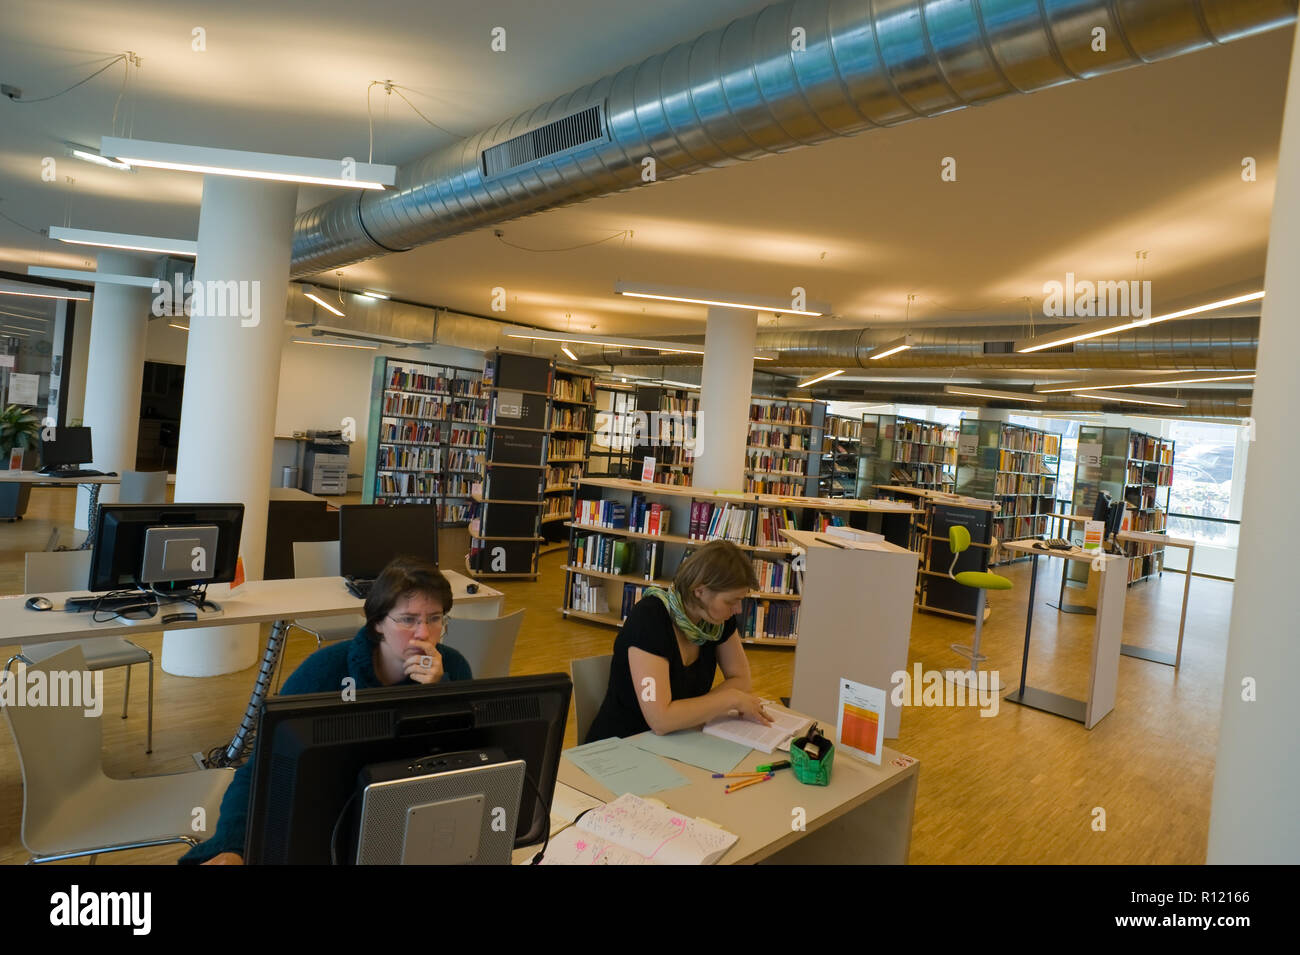 Österreichische Forschungsstiftung für Internationale Entwicklung, Bibliothek - Biblioteca Foto Stock